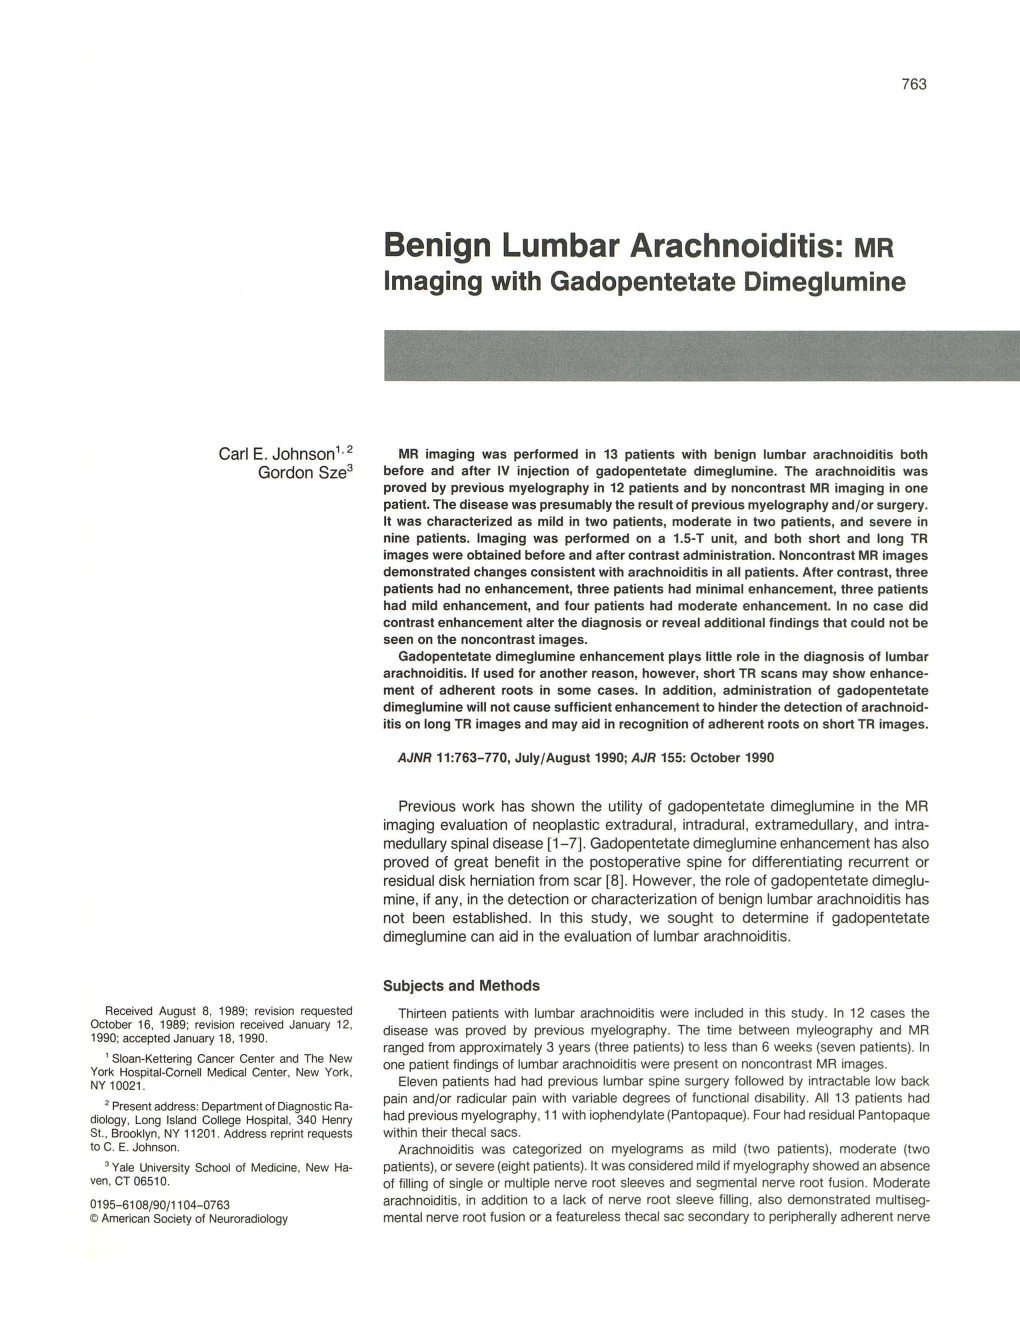 Benign Lumbar Arachnoiditis: MR Imaging with Gadopentetate Dimeglumine